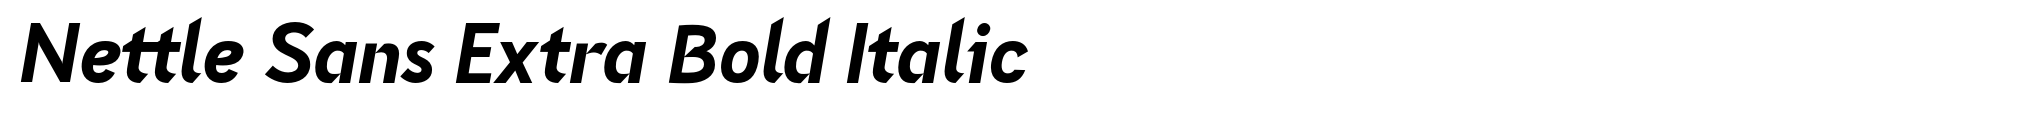 Nettle Sans Extra Bold Italic image